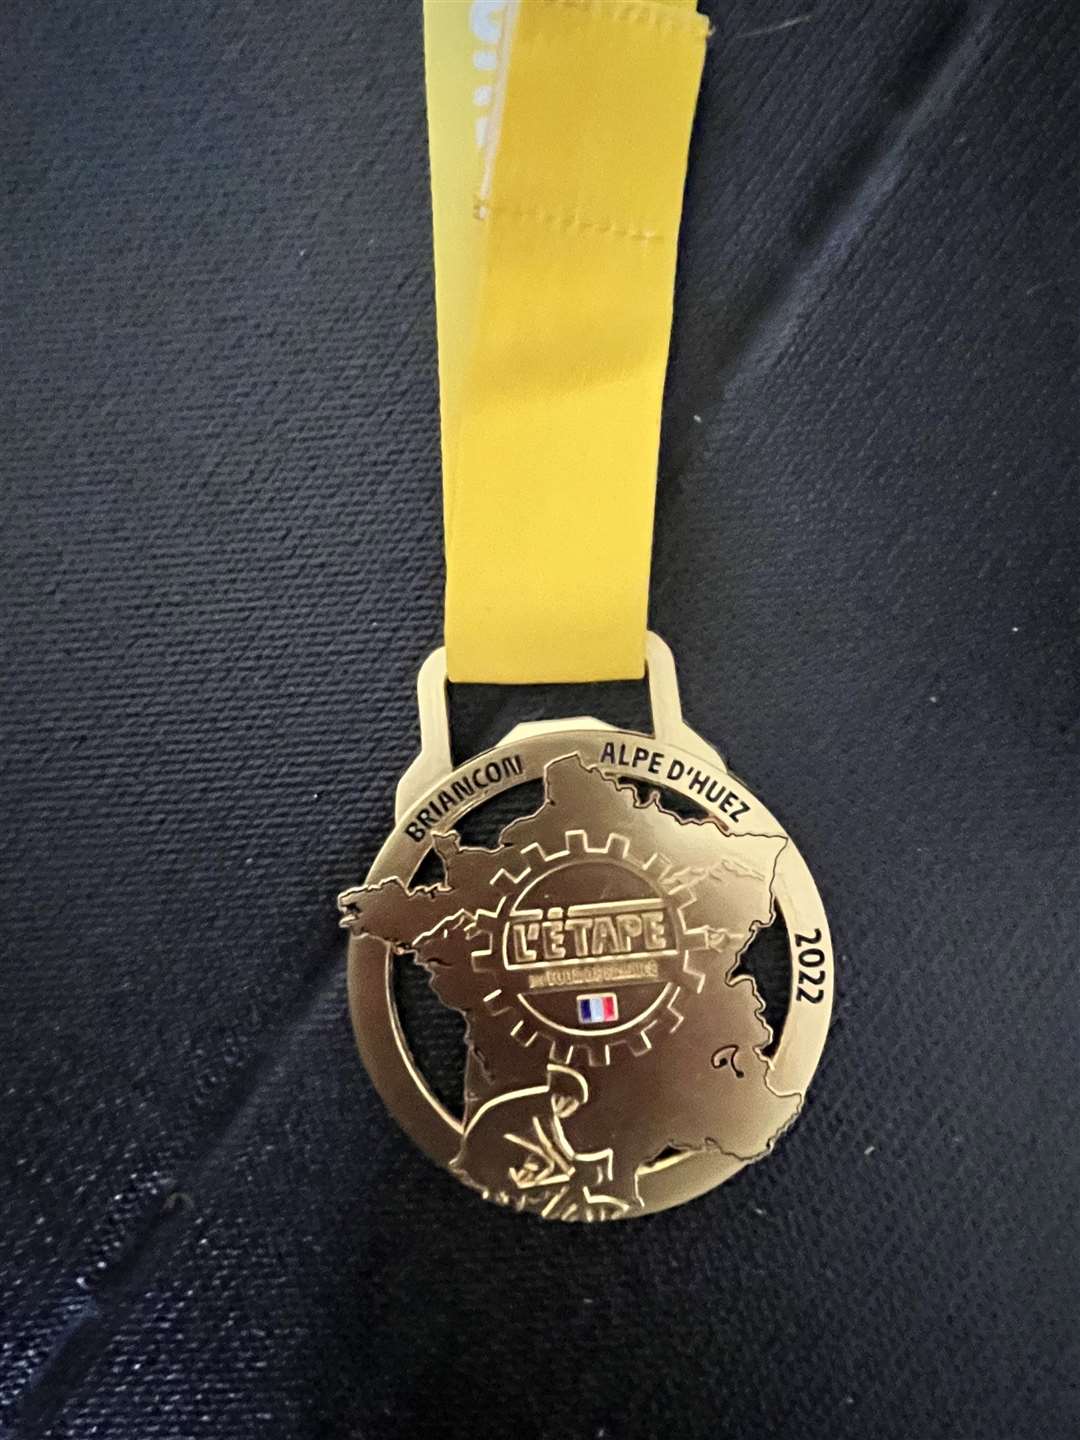 David's L'Étape du Tour medal.